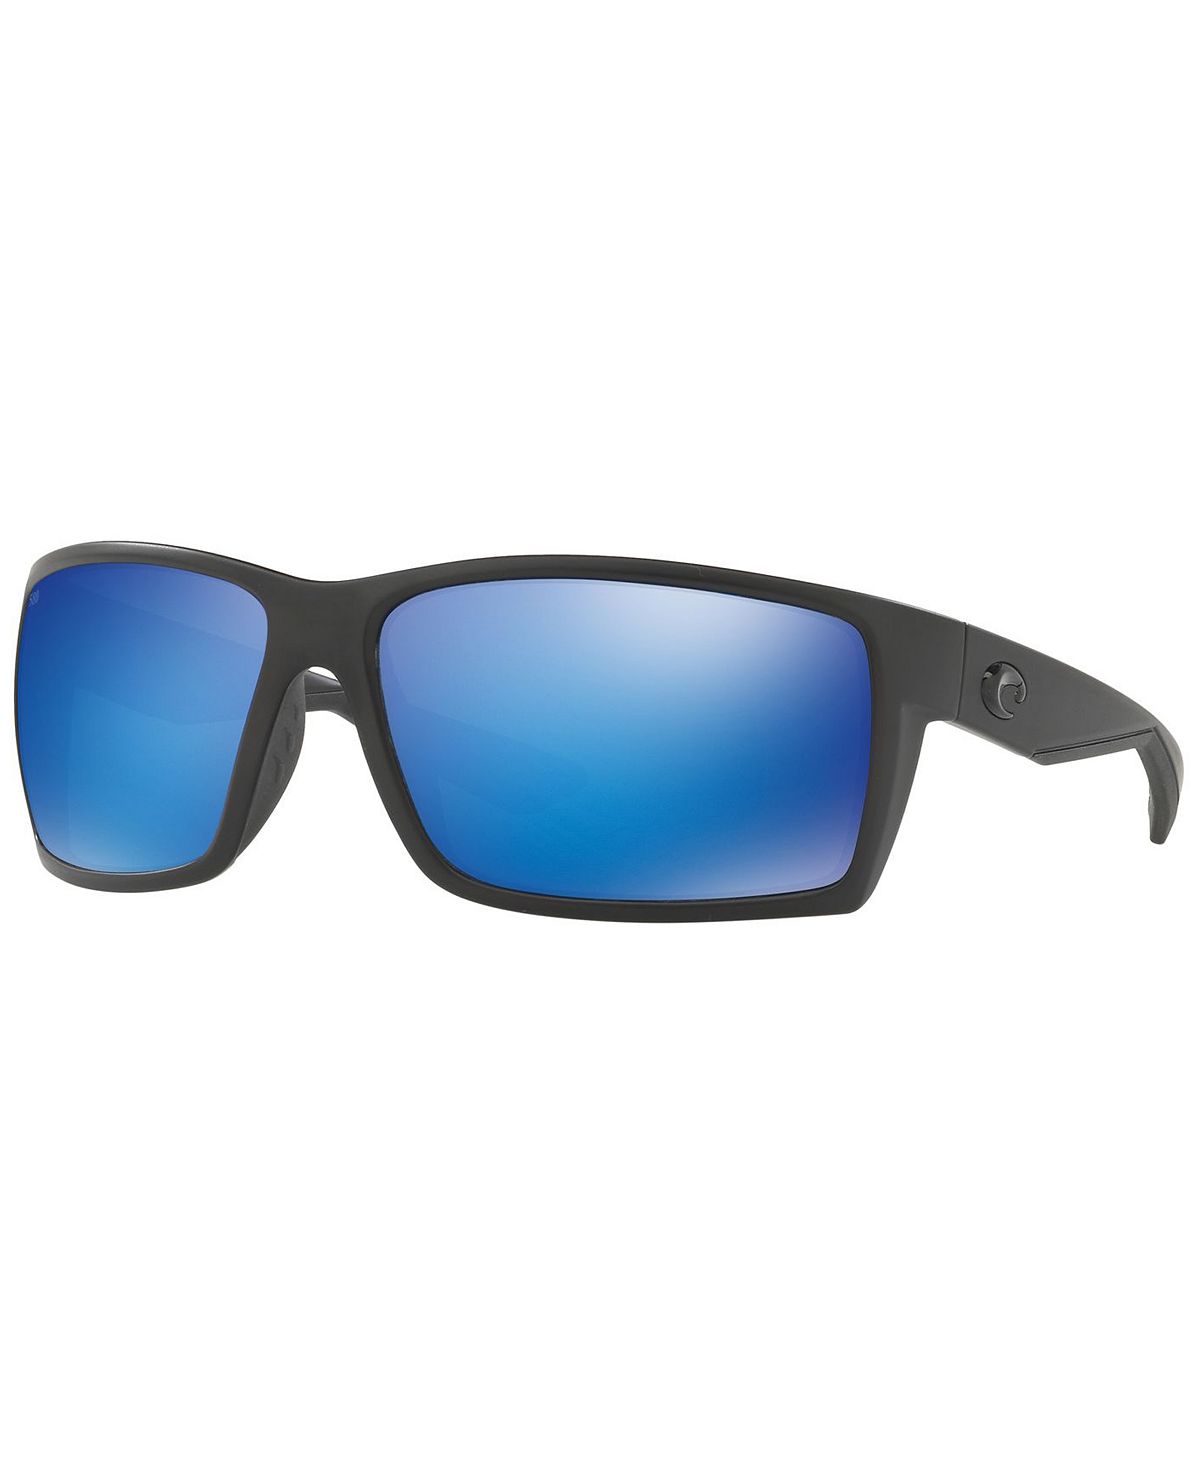 Поляризационные солнцезащитные очки, REEFTON 64 Costa Del Mar black juneau mirror lake